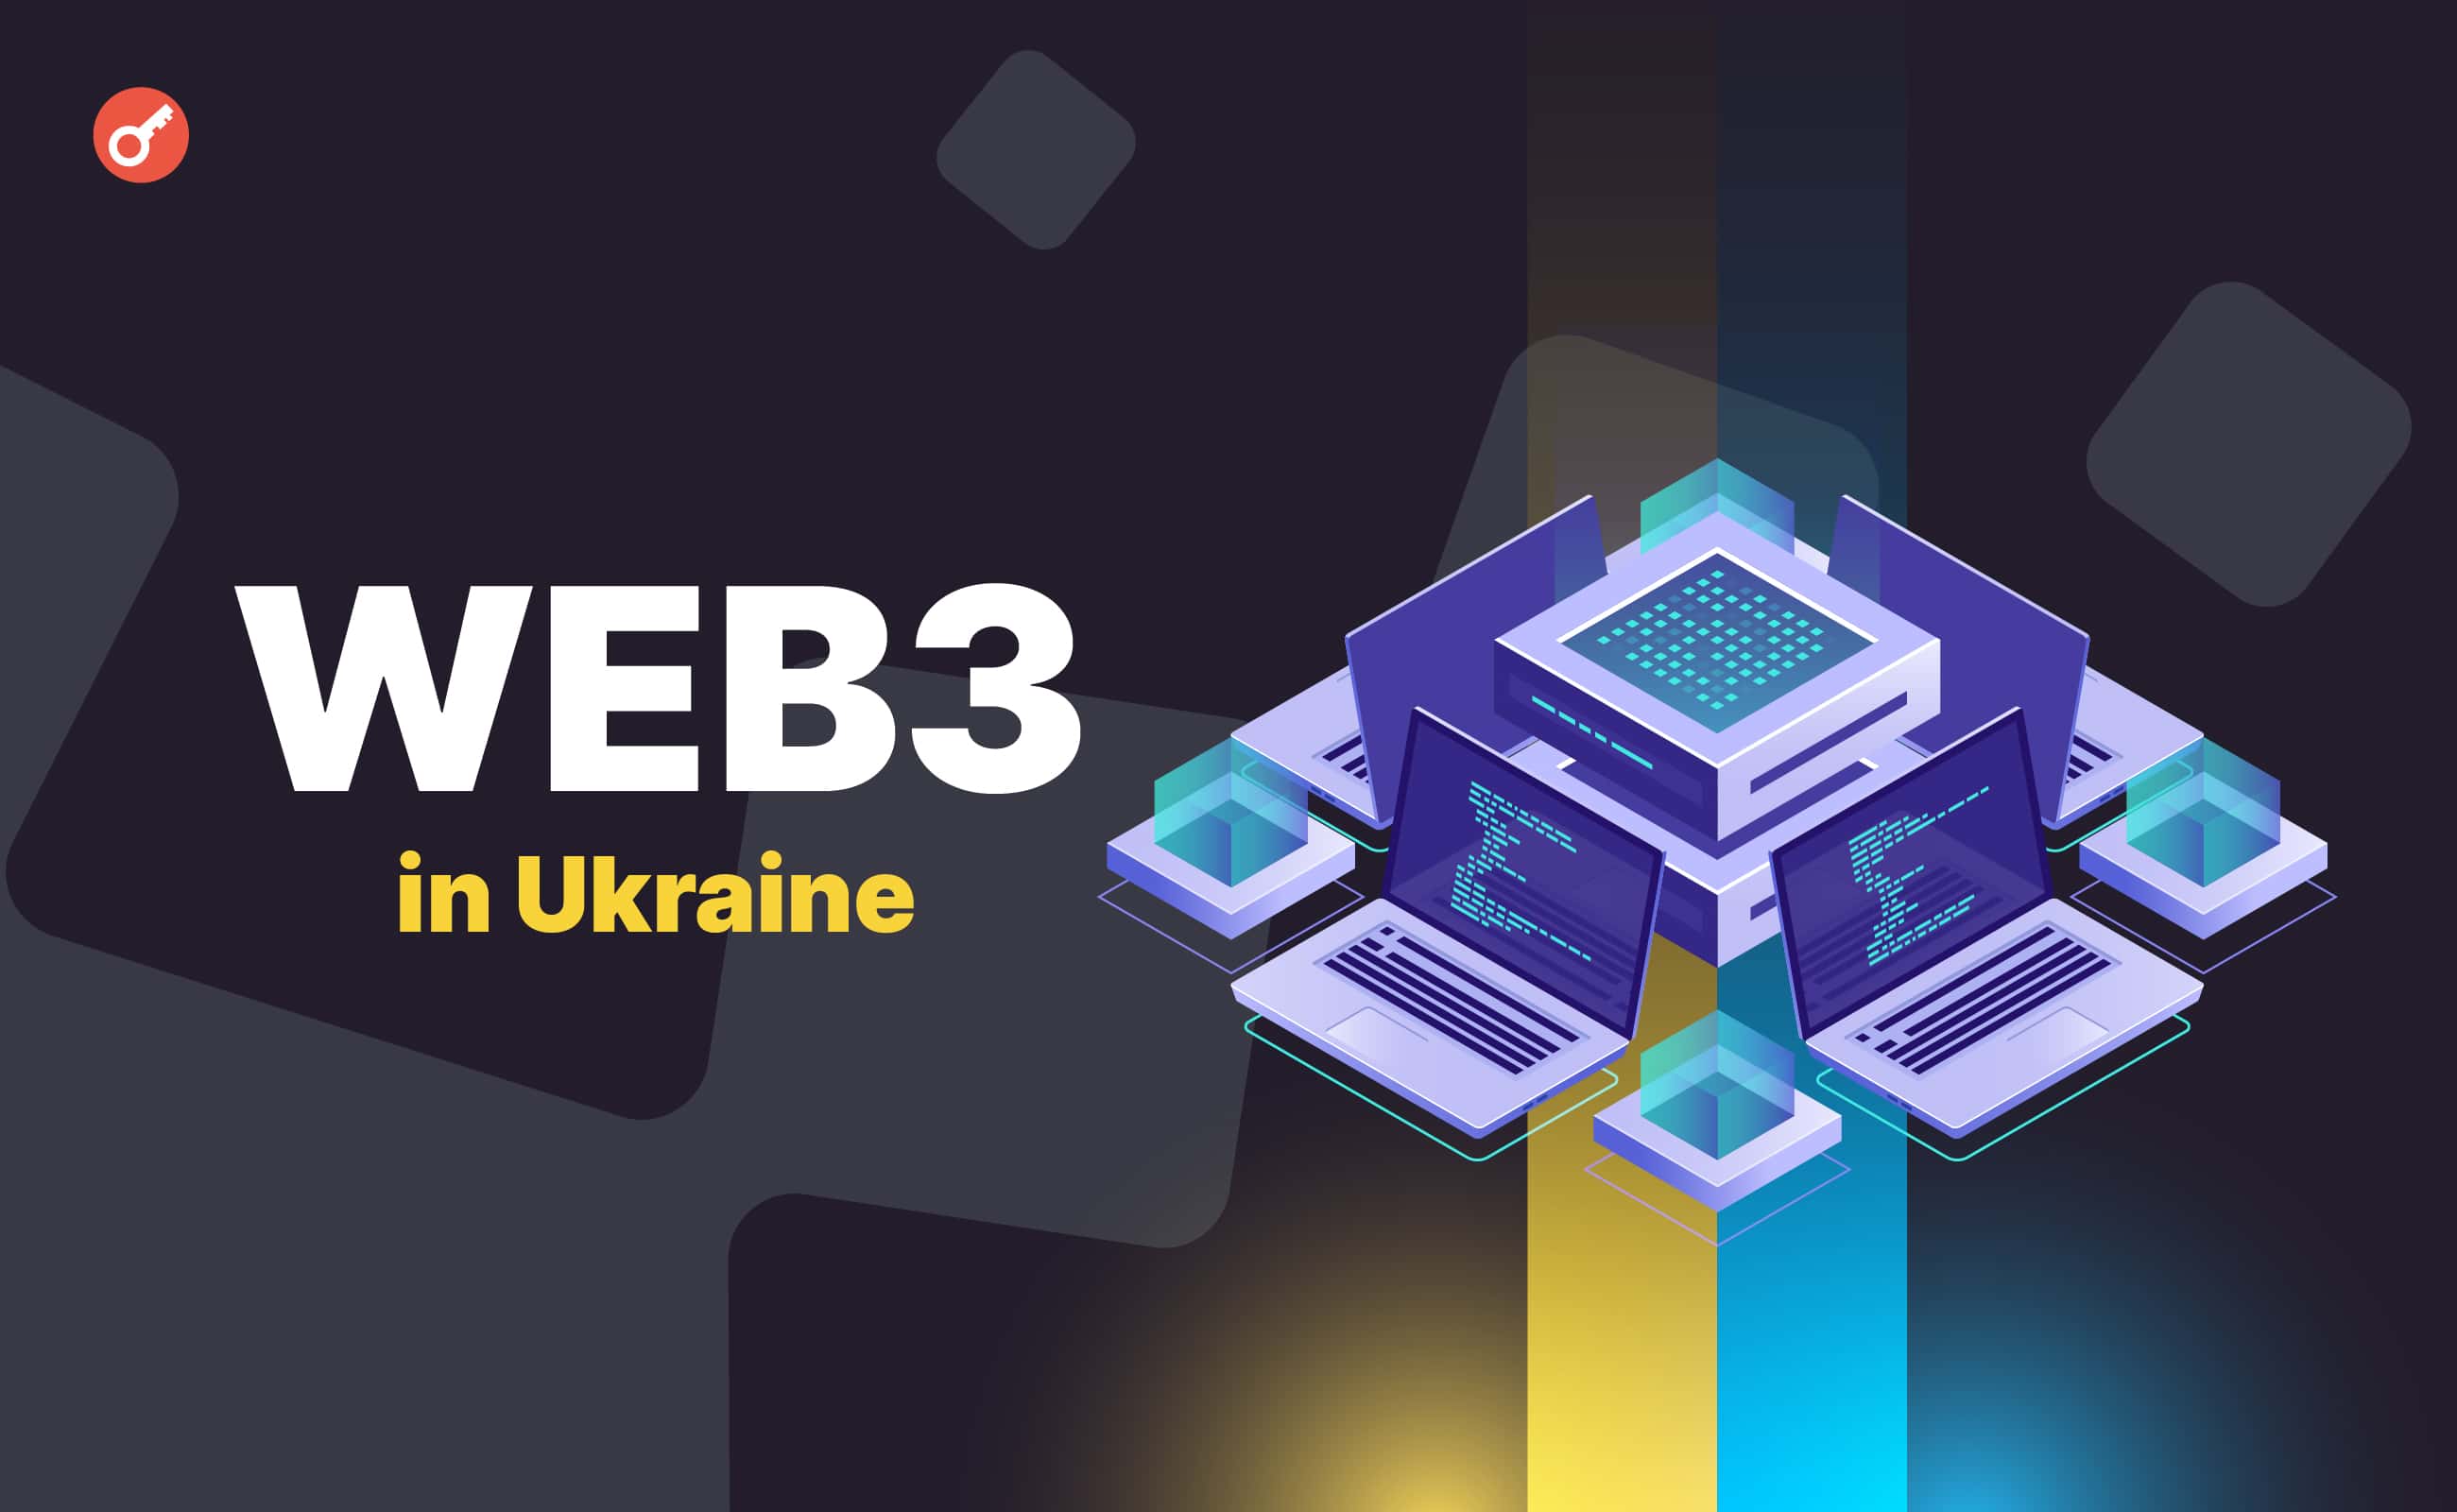 В Україні представили дослідження проблем та перспектив Web3-індустрії. Головний колаж новини.